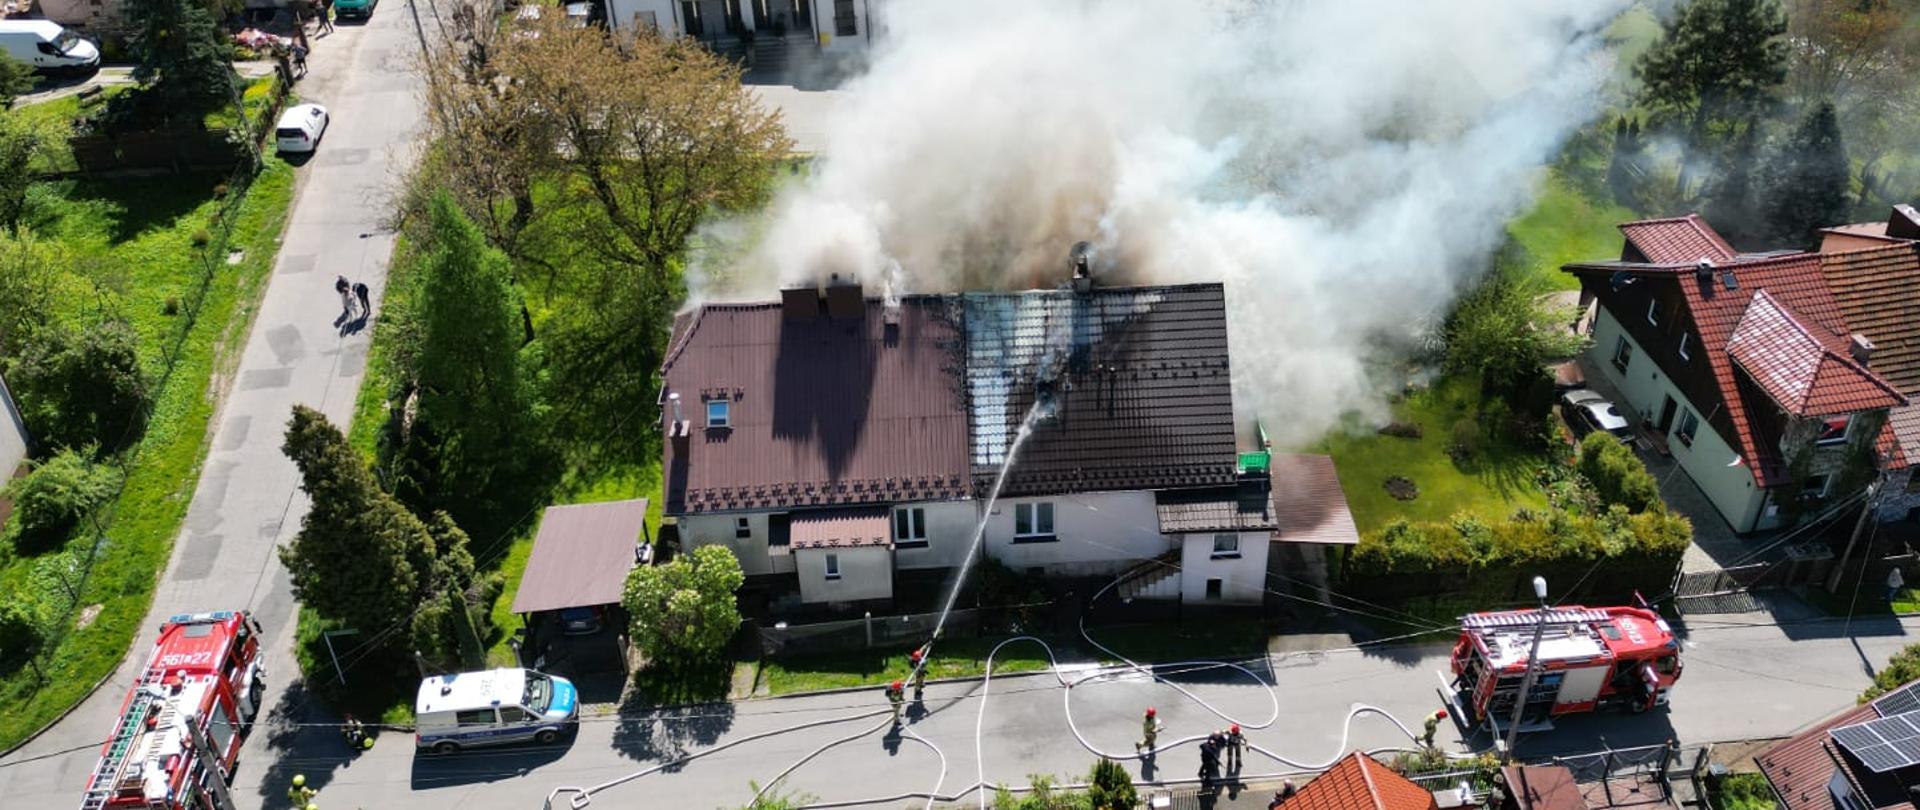 Na zdjęciu palący się budynek mieszkalny, widać wydobywający się dym. W pobliżu dwa samochody pożarnicze oraz strażacy prowadzący działania gaśnicze